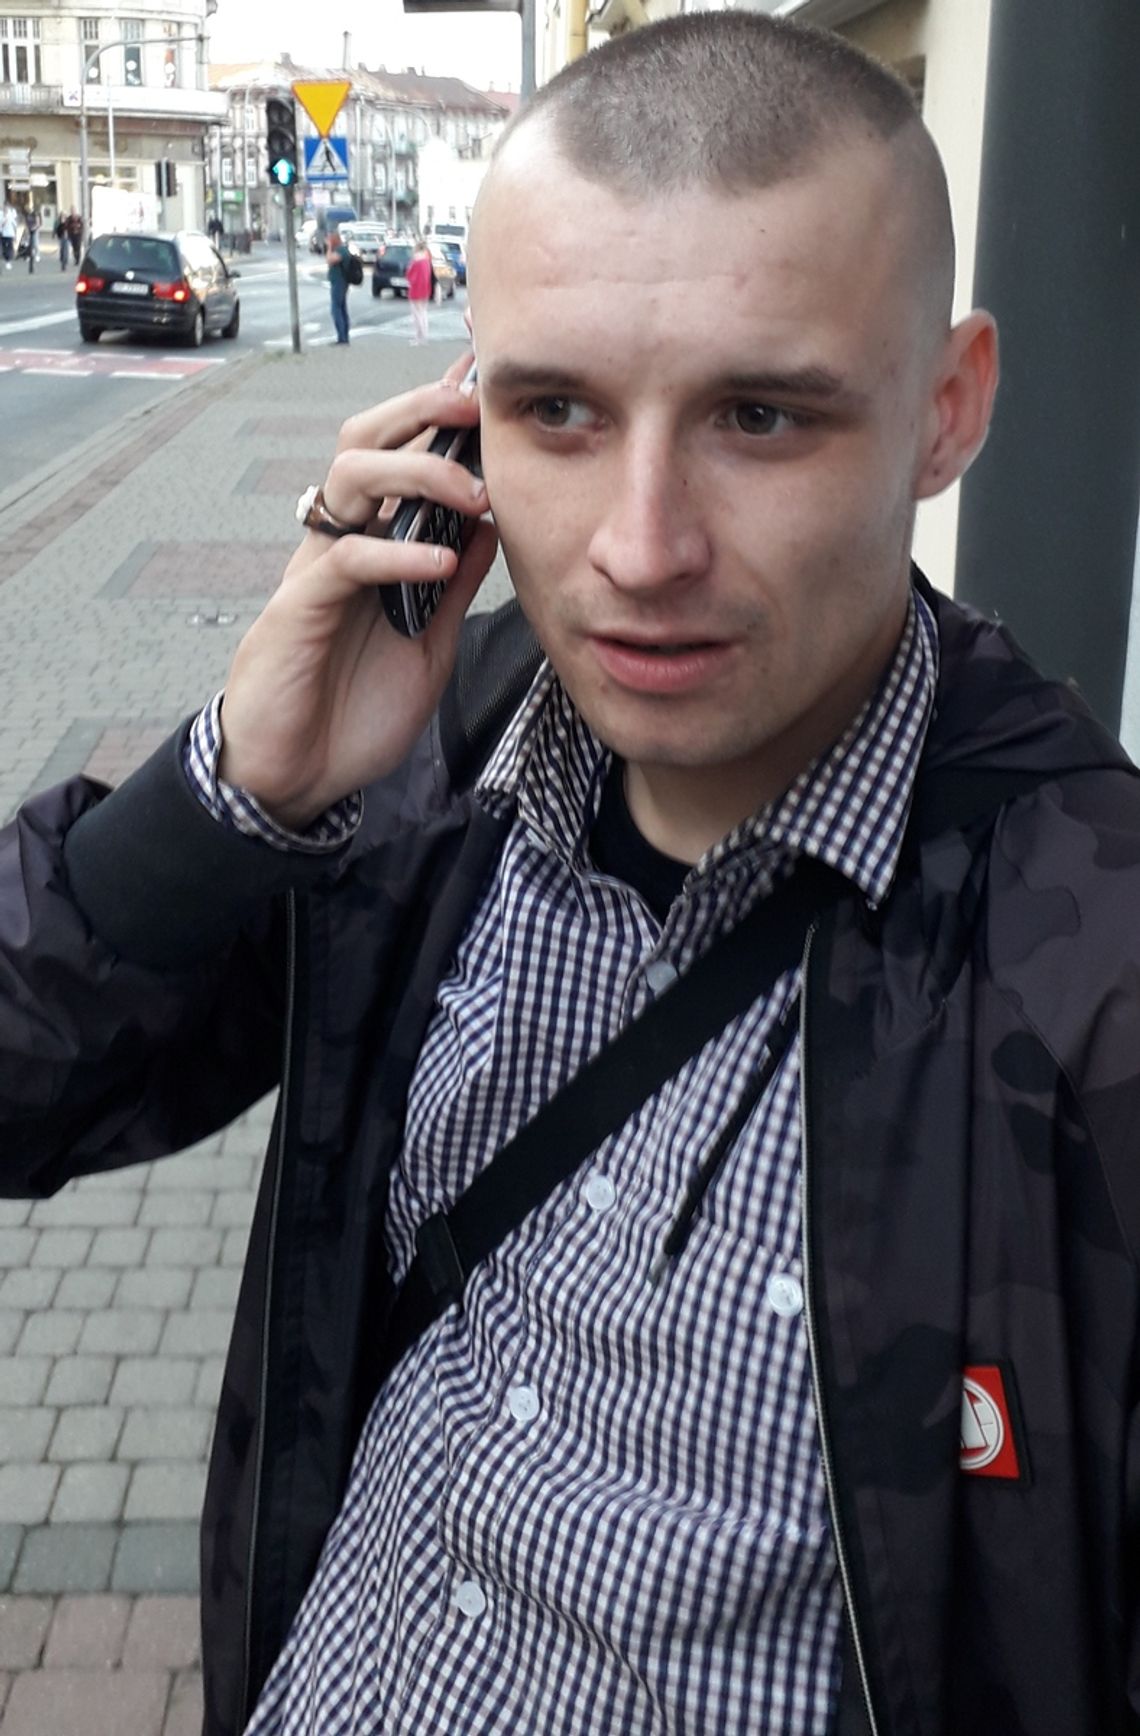 Podając się za policjanta wyłudził 60 tysięcy złotych. Policja publikuje wizerunek "odbieraka" i proszą o pomoc